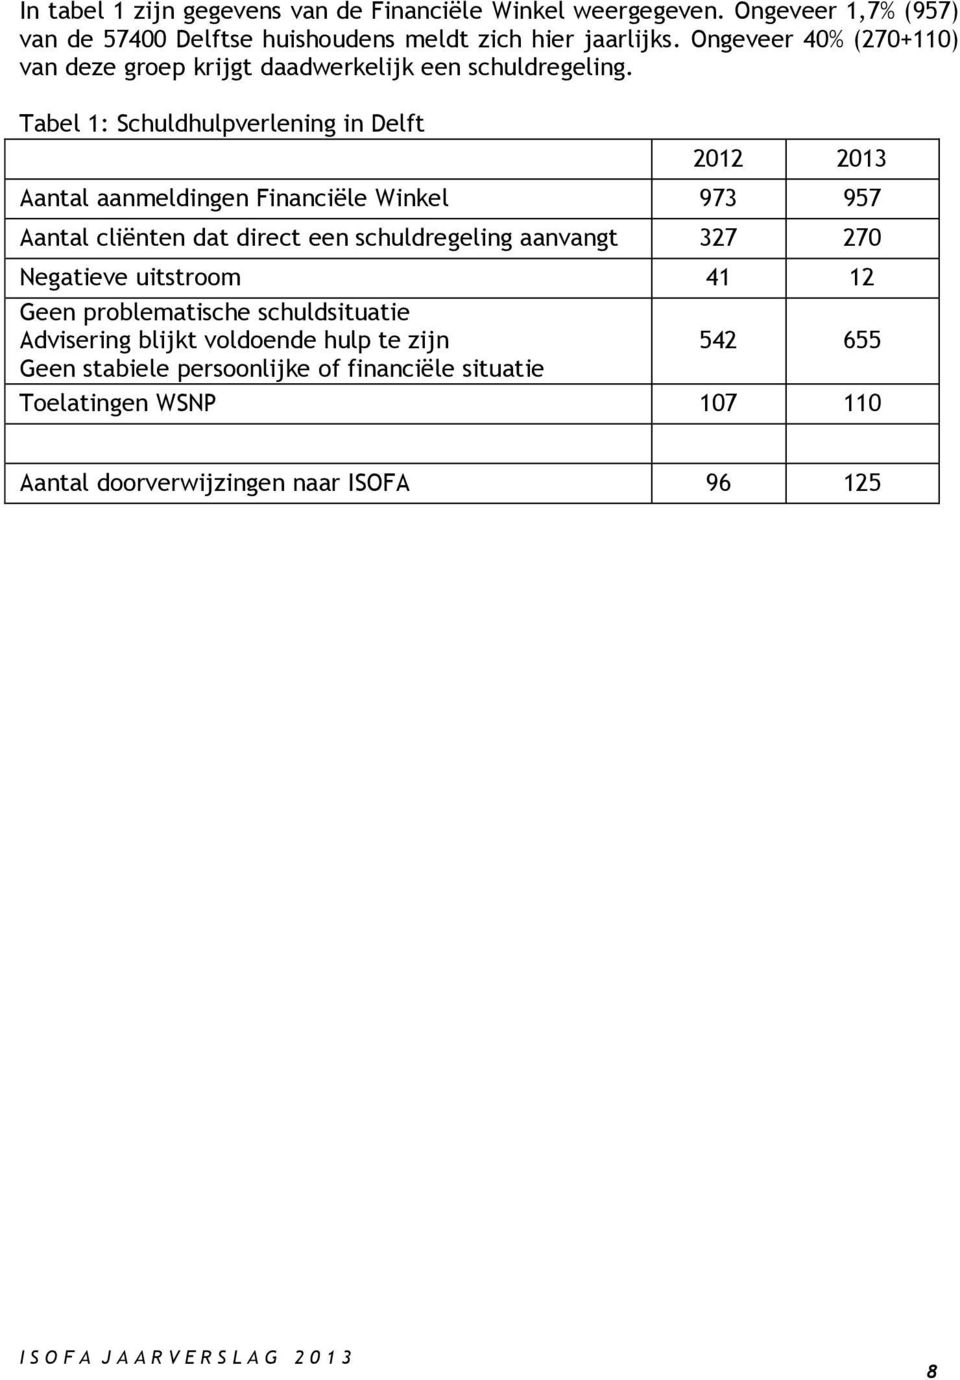 Tabel 1: Schuldhulpverlening in Delft 2012 2013 Aantal aanmeldingen Financiële Winkel 973 957 Aantal cliënten dat direct een schuldregeling aanvangt